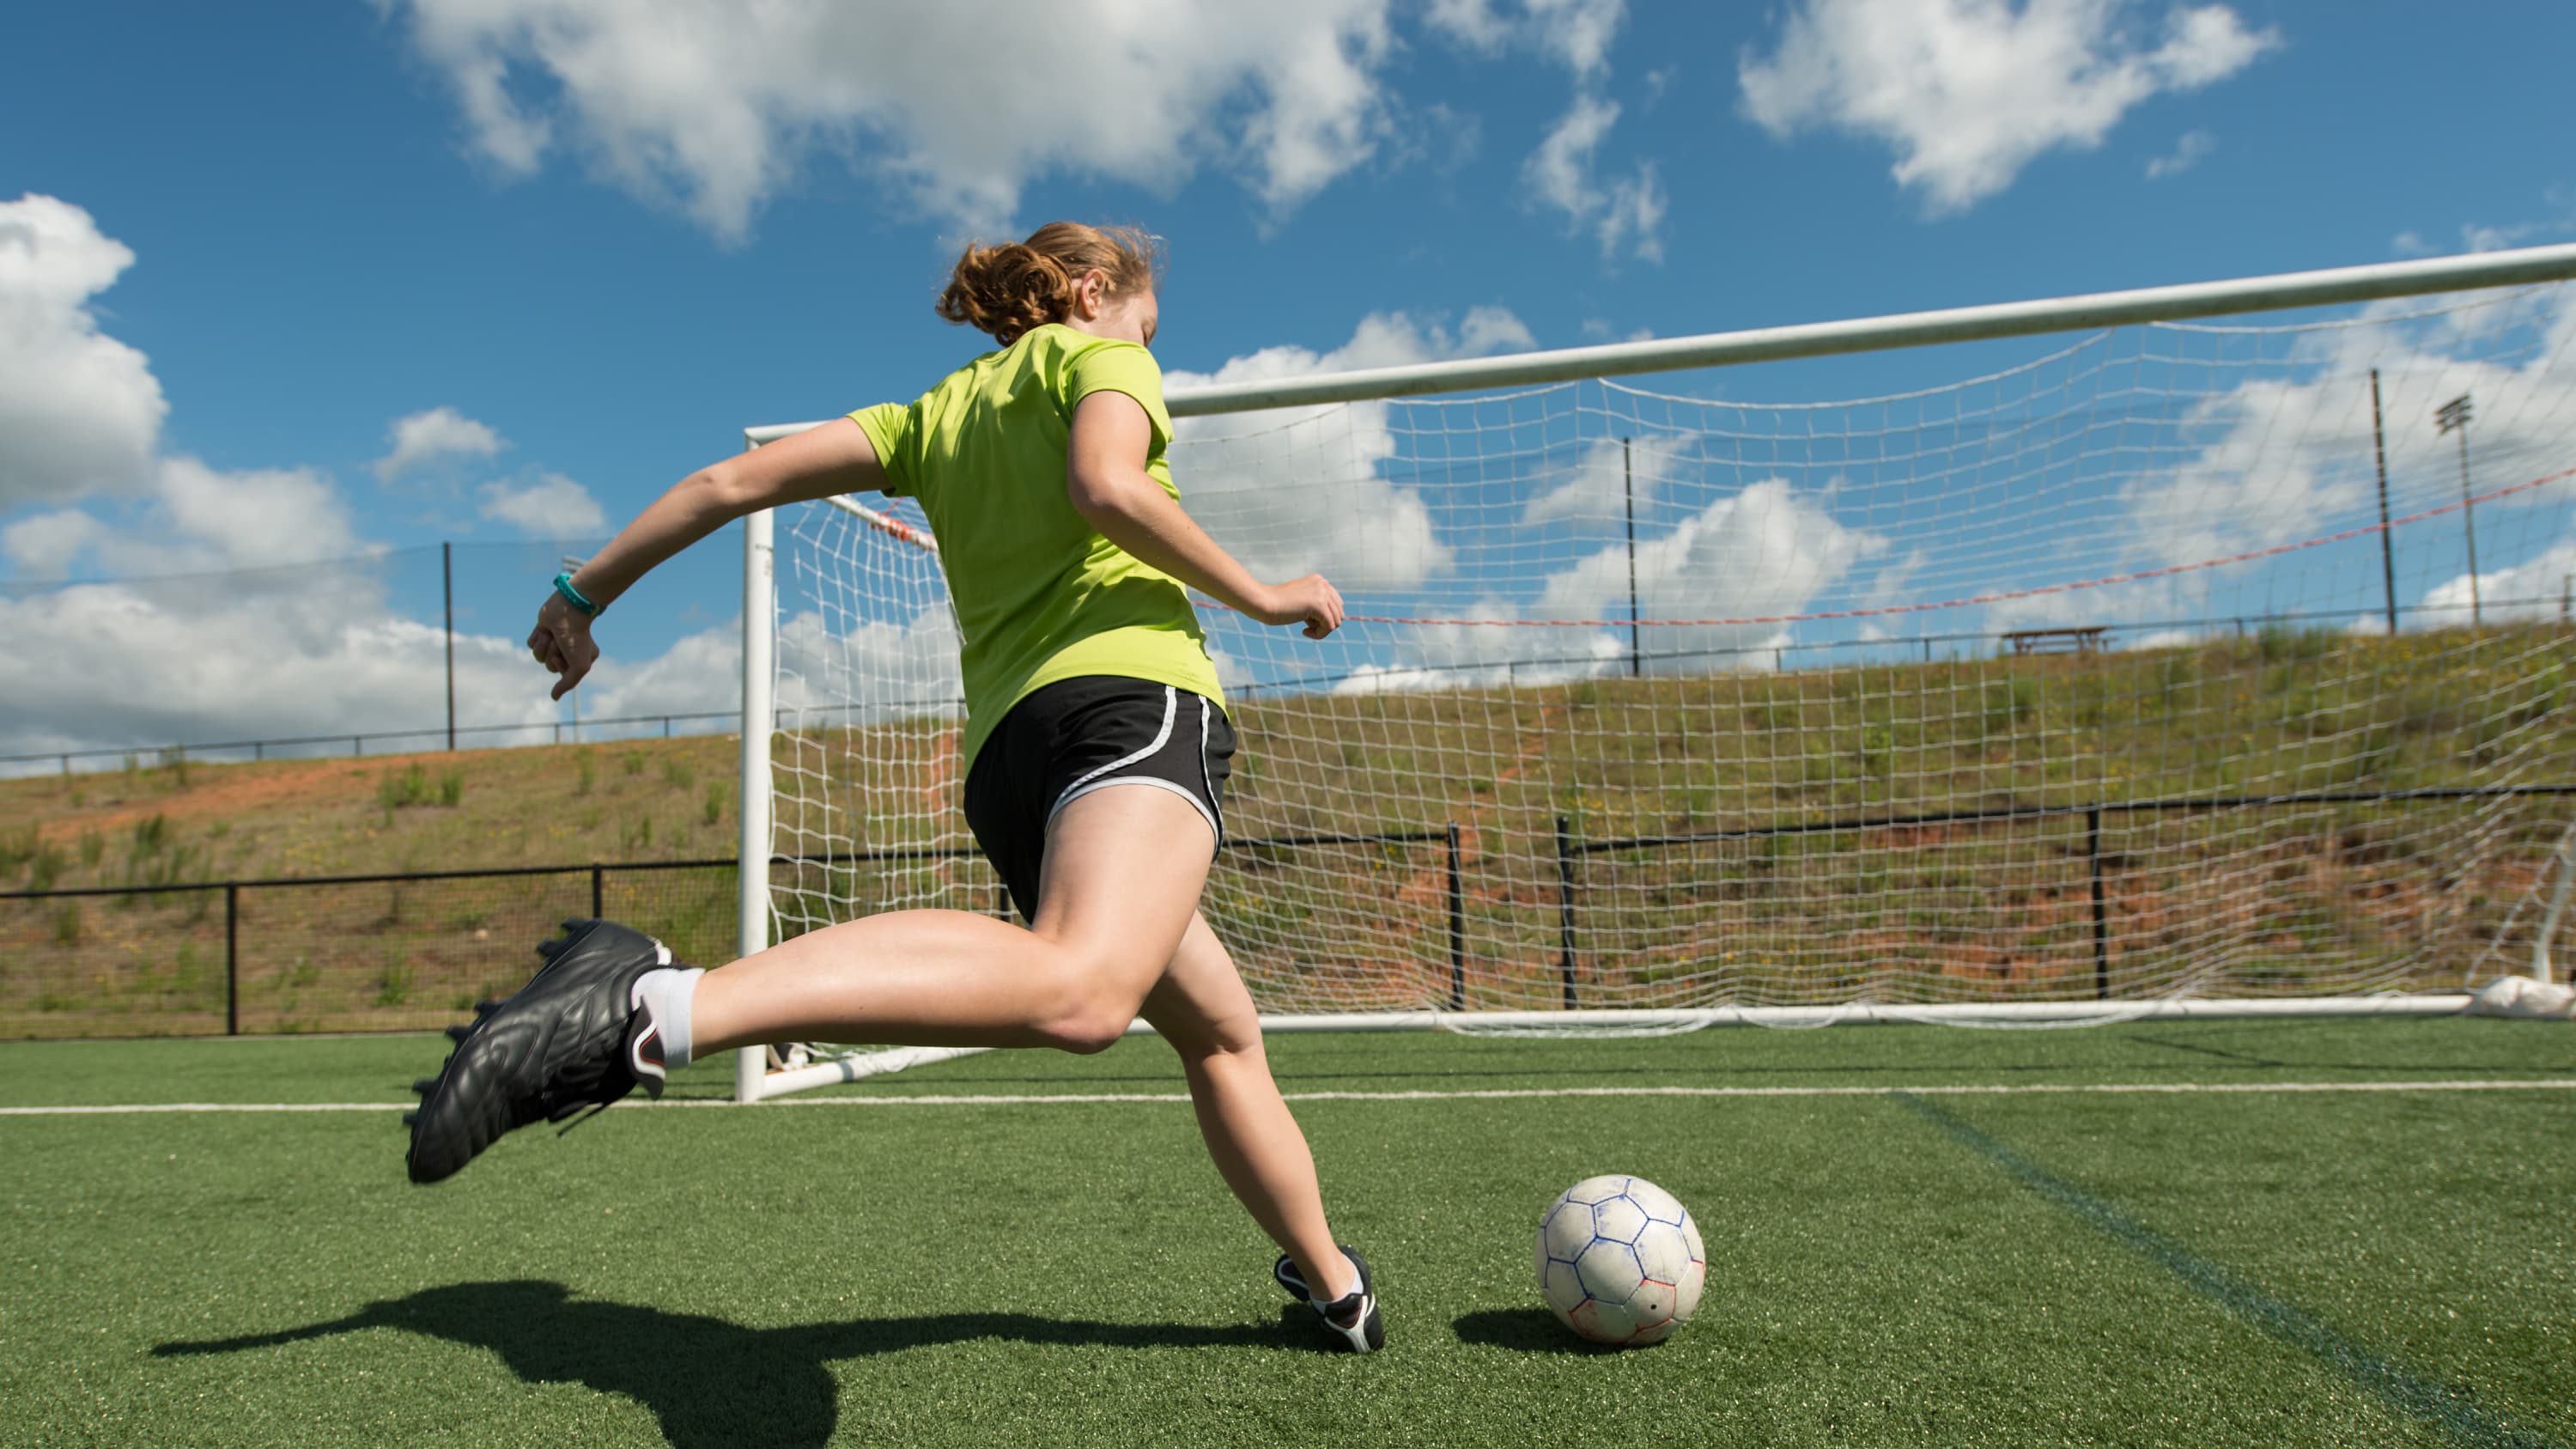 soccer player kicking a ball